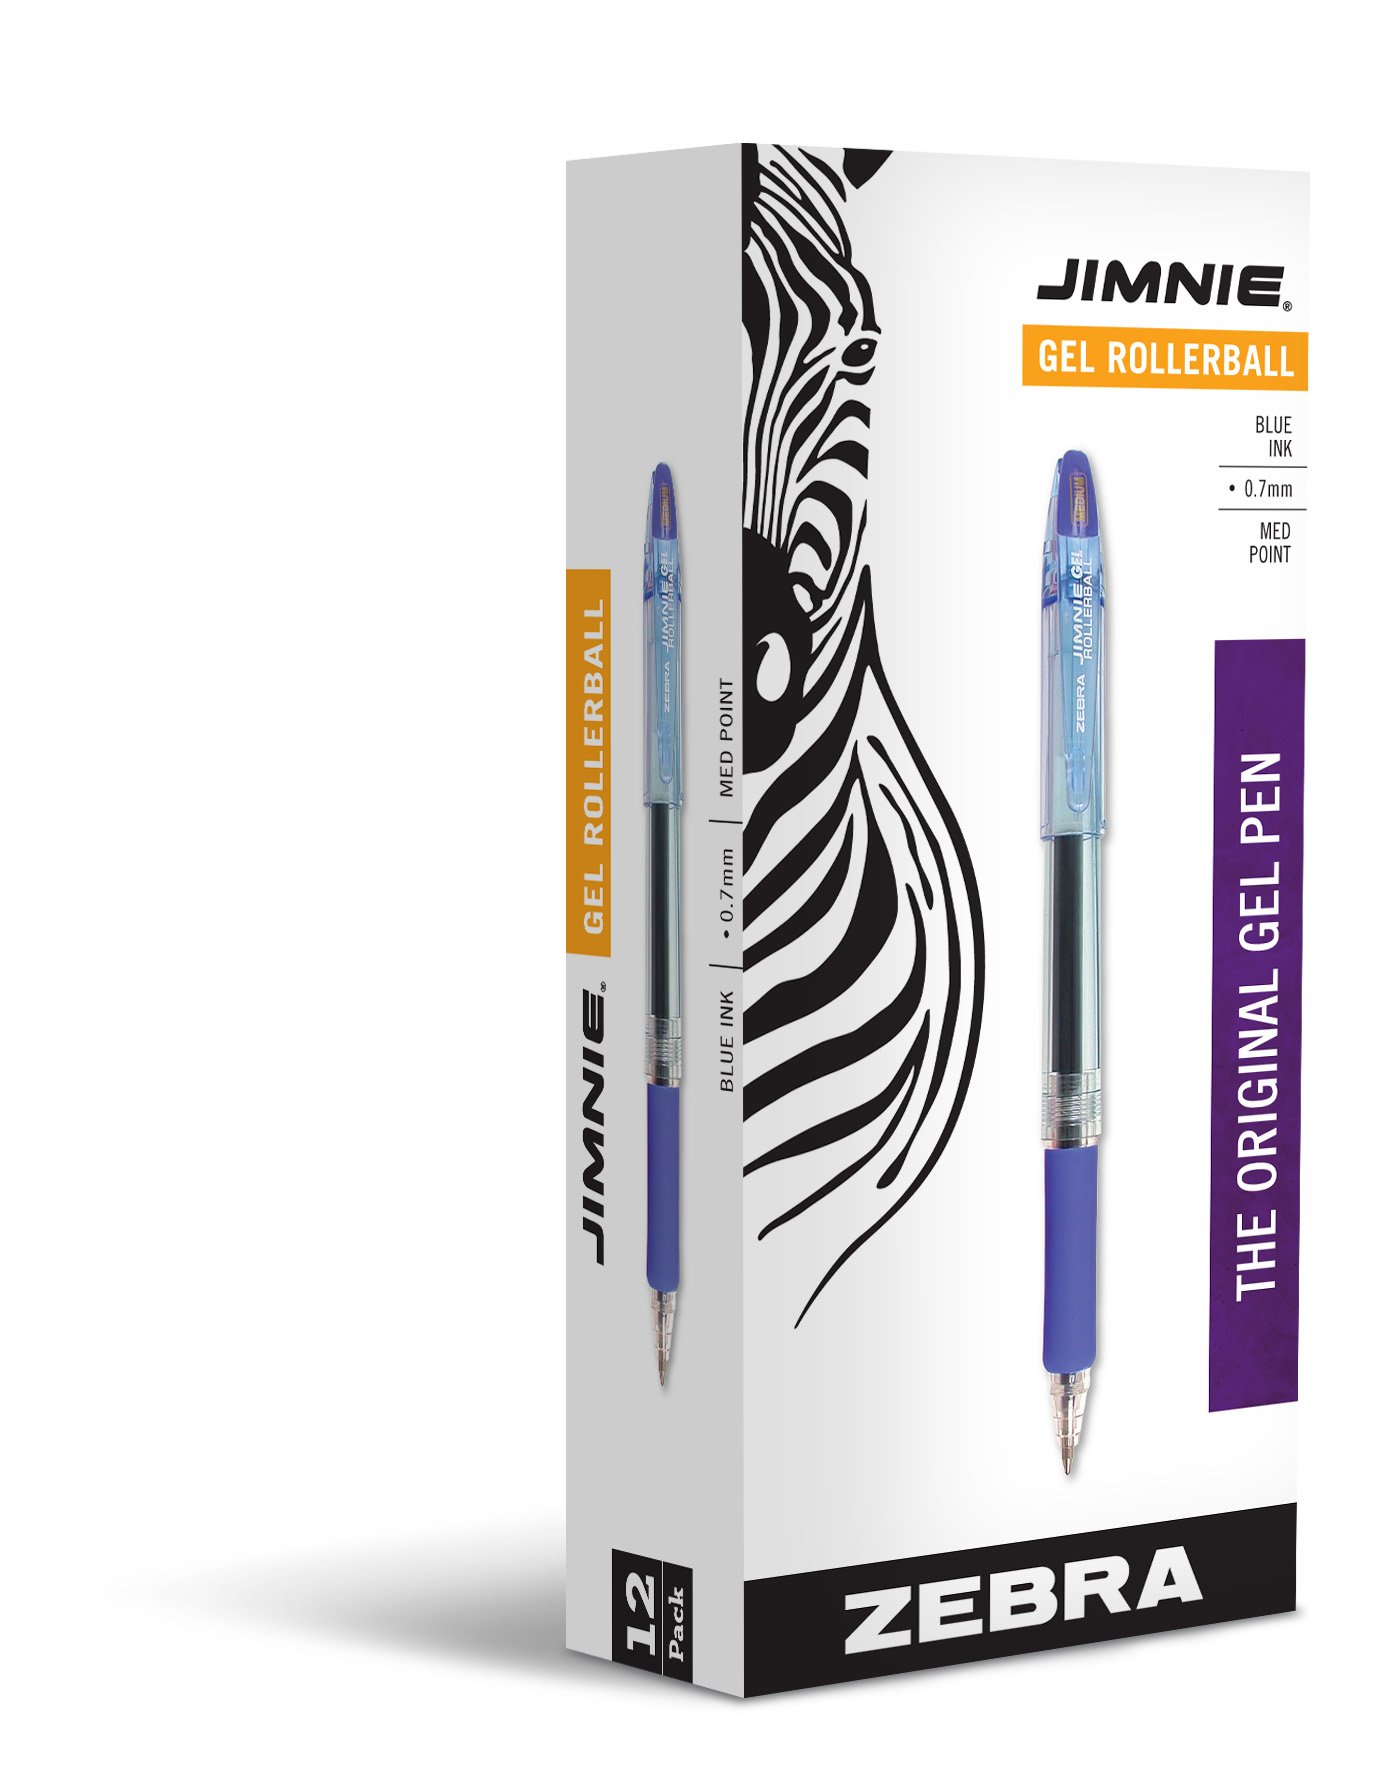 Zebra Pen Jimnie Roller Ball Stick Gel Pen, Blue Ink, Medium Point, 0.7mm, 12-Count (44120)